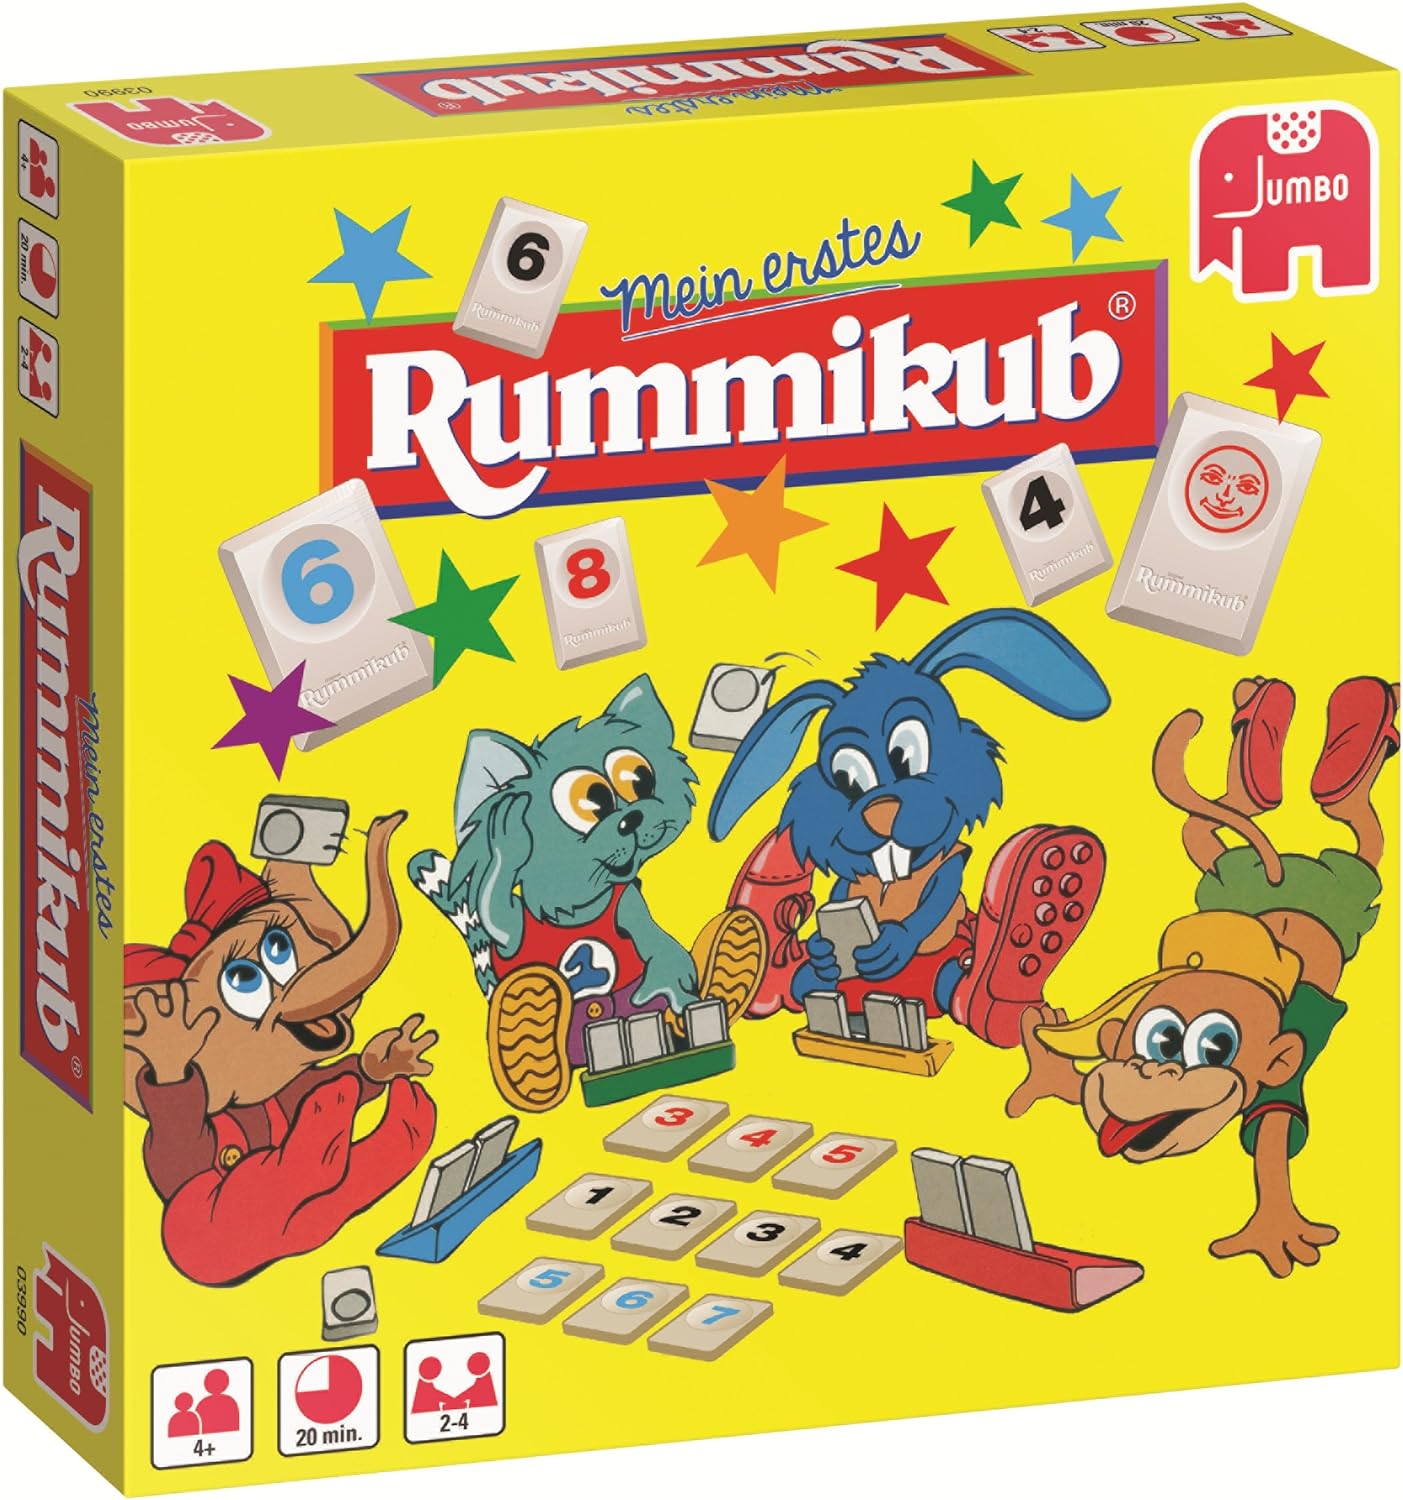 Rummikub Spiel, ein perfektes Spiel für 4 Jährige, da hierbei viel Kooperation gefragt ist.